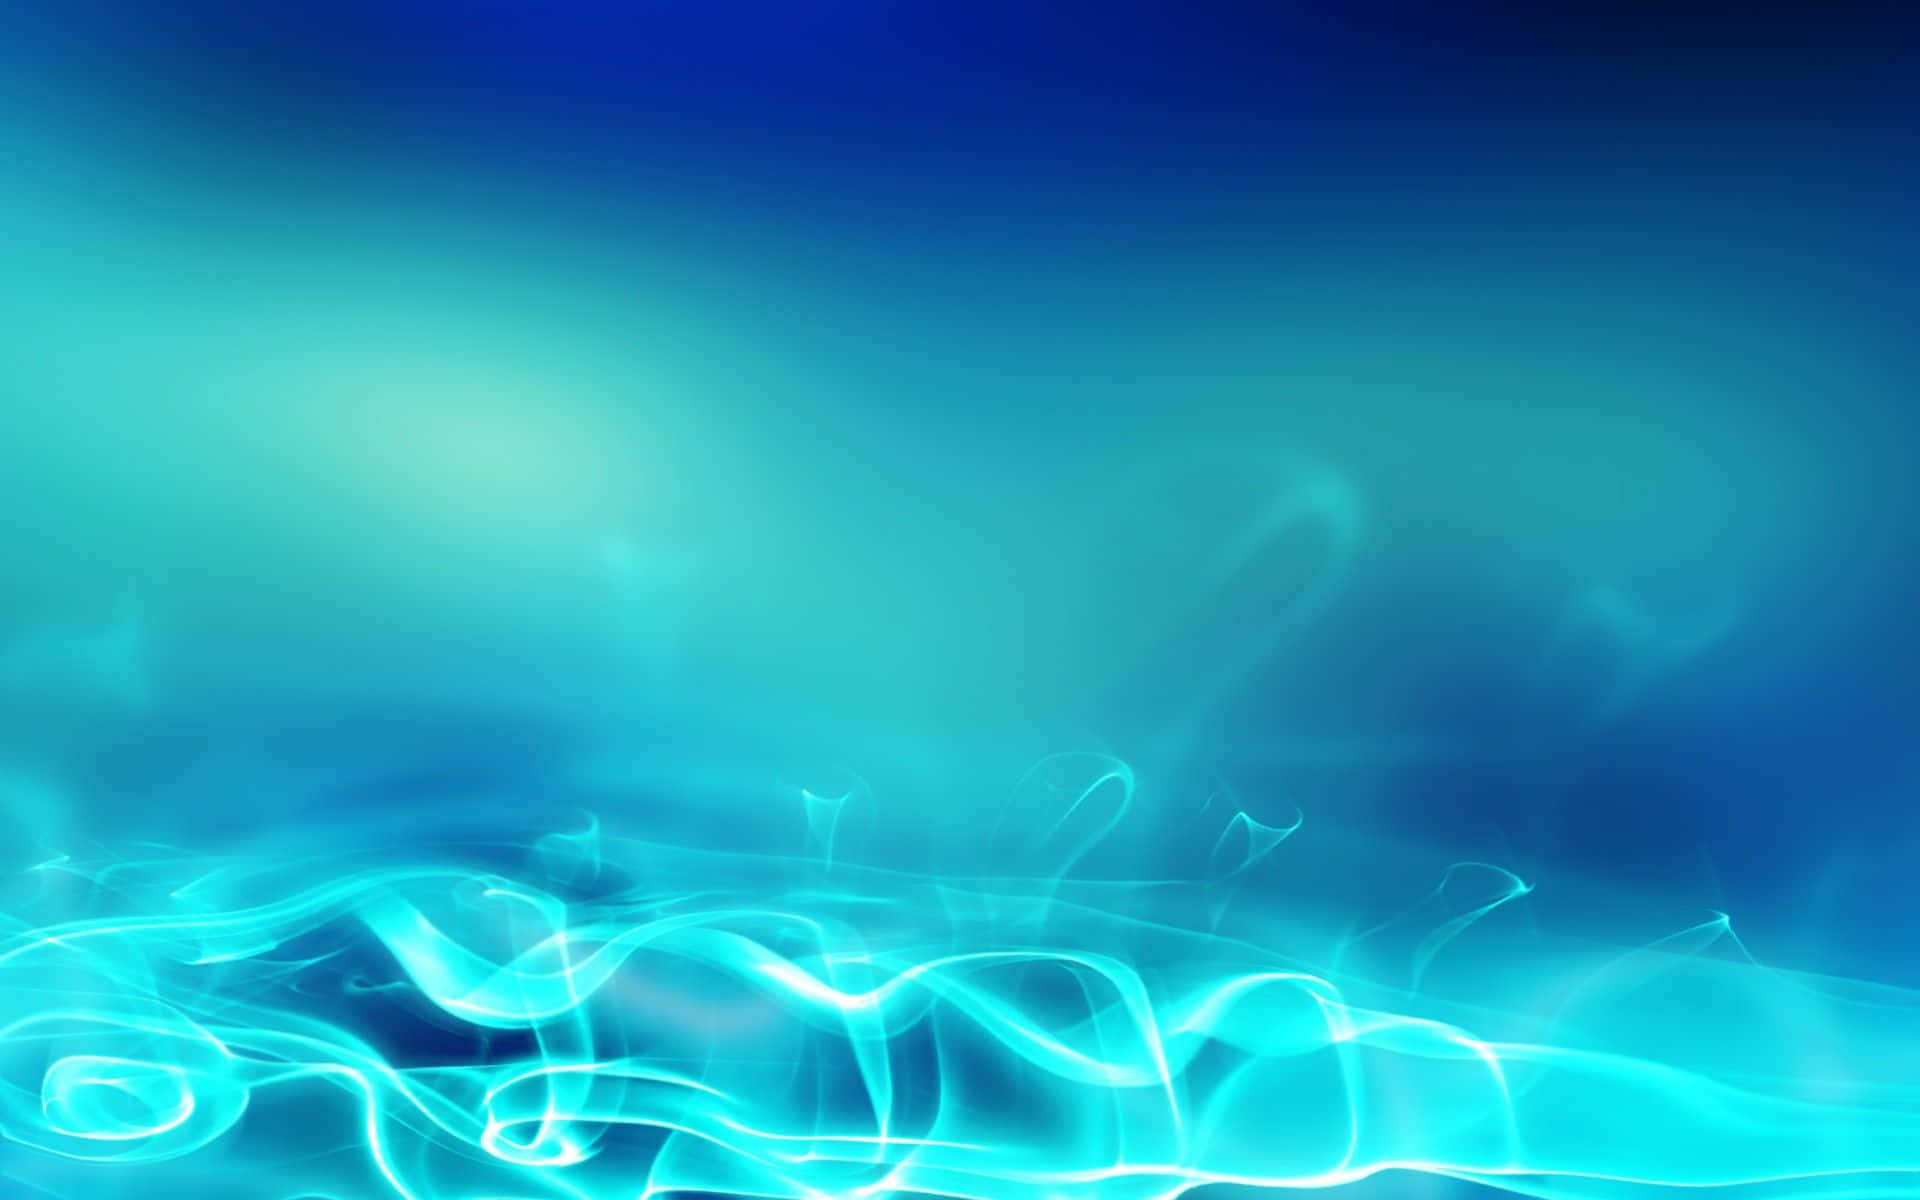 Blue Lagoon: An Aqua Background